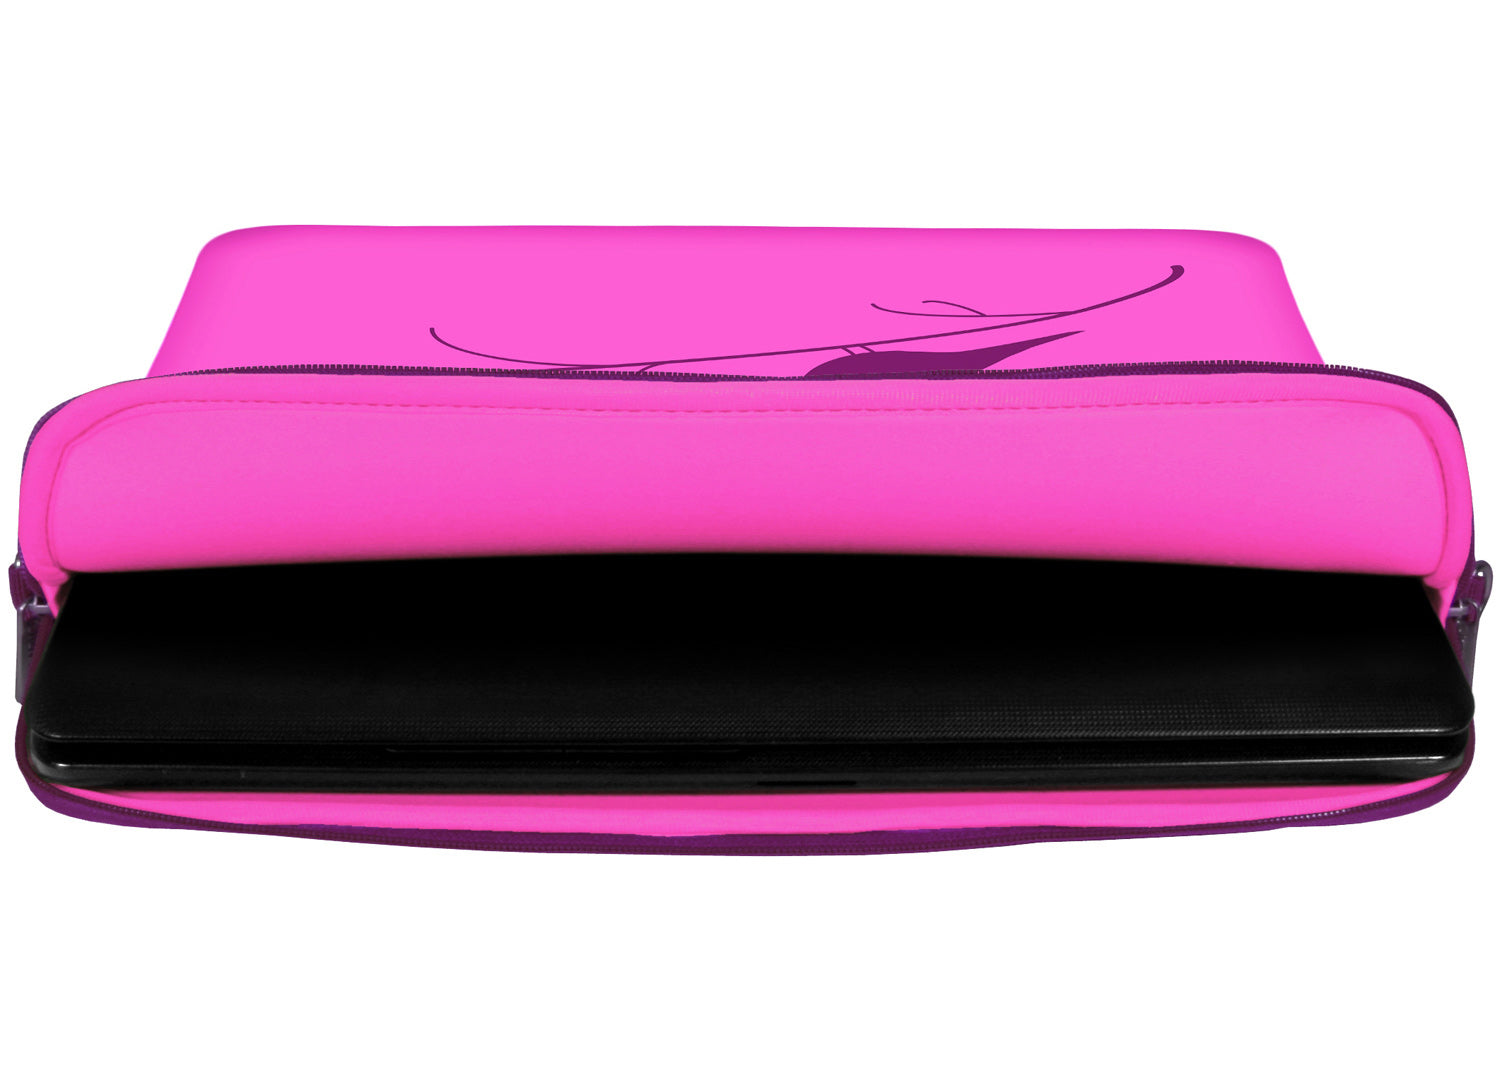 Innenansicht mit Schutzlippen der LS122 Early Bird Designer Laptop Tasche in pink aus wasserabweisendem Neopren